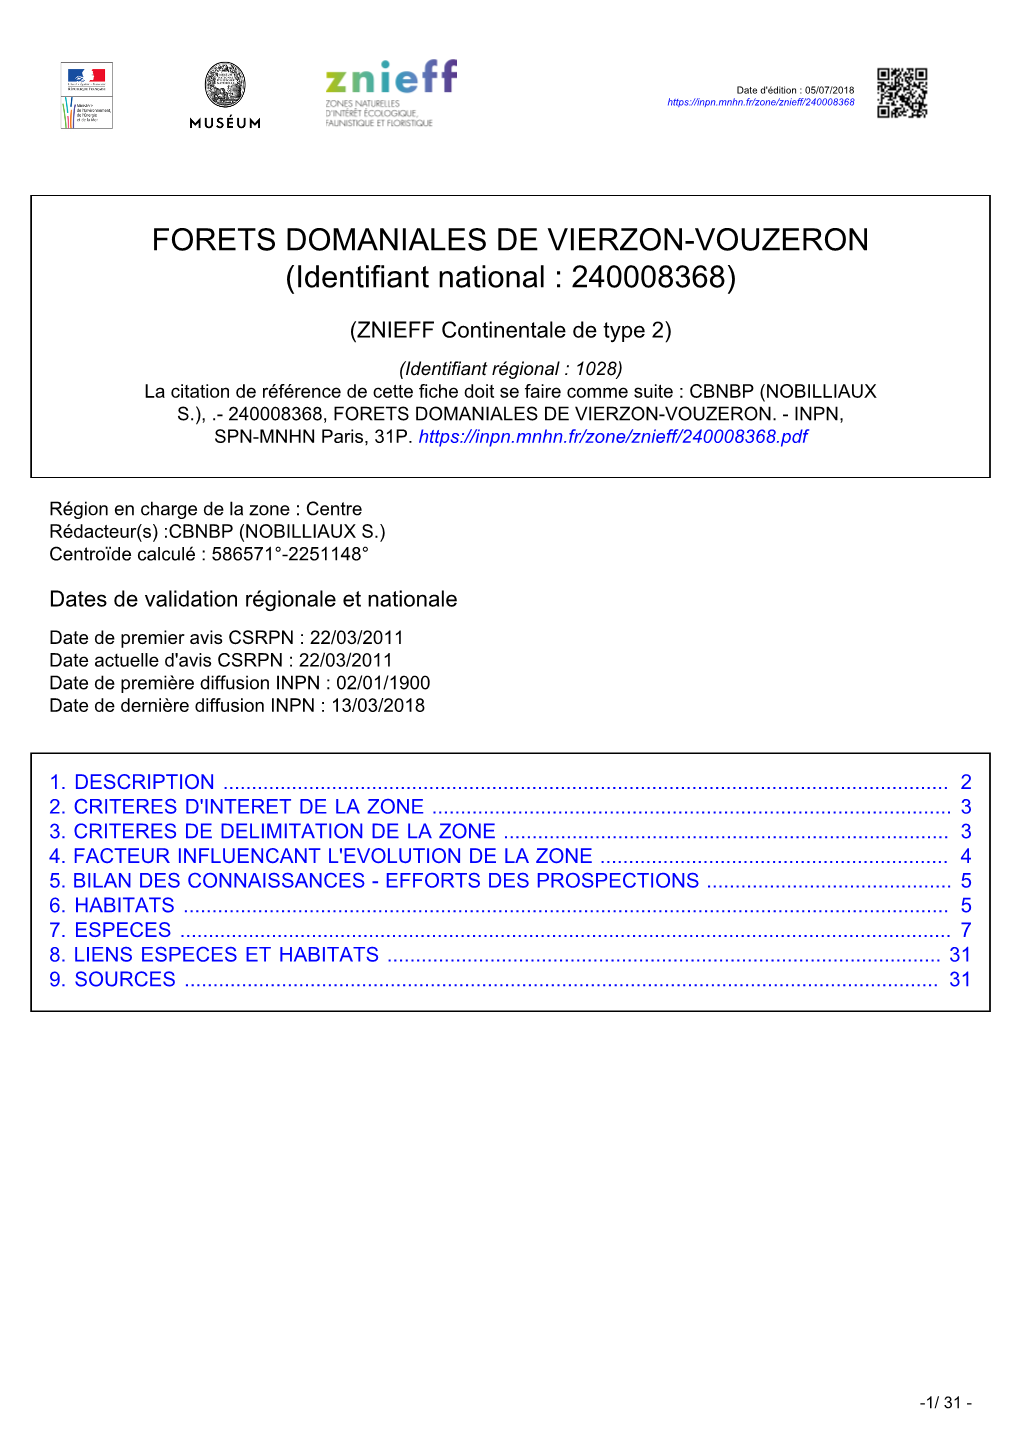 FORETS DOMANIALES DE VIERZON-VOUZERON (Identifiant National : 240008368)